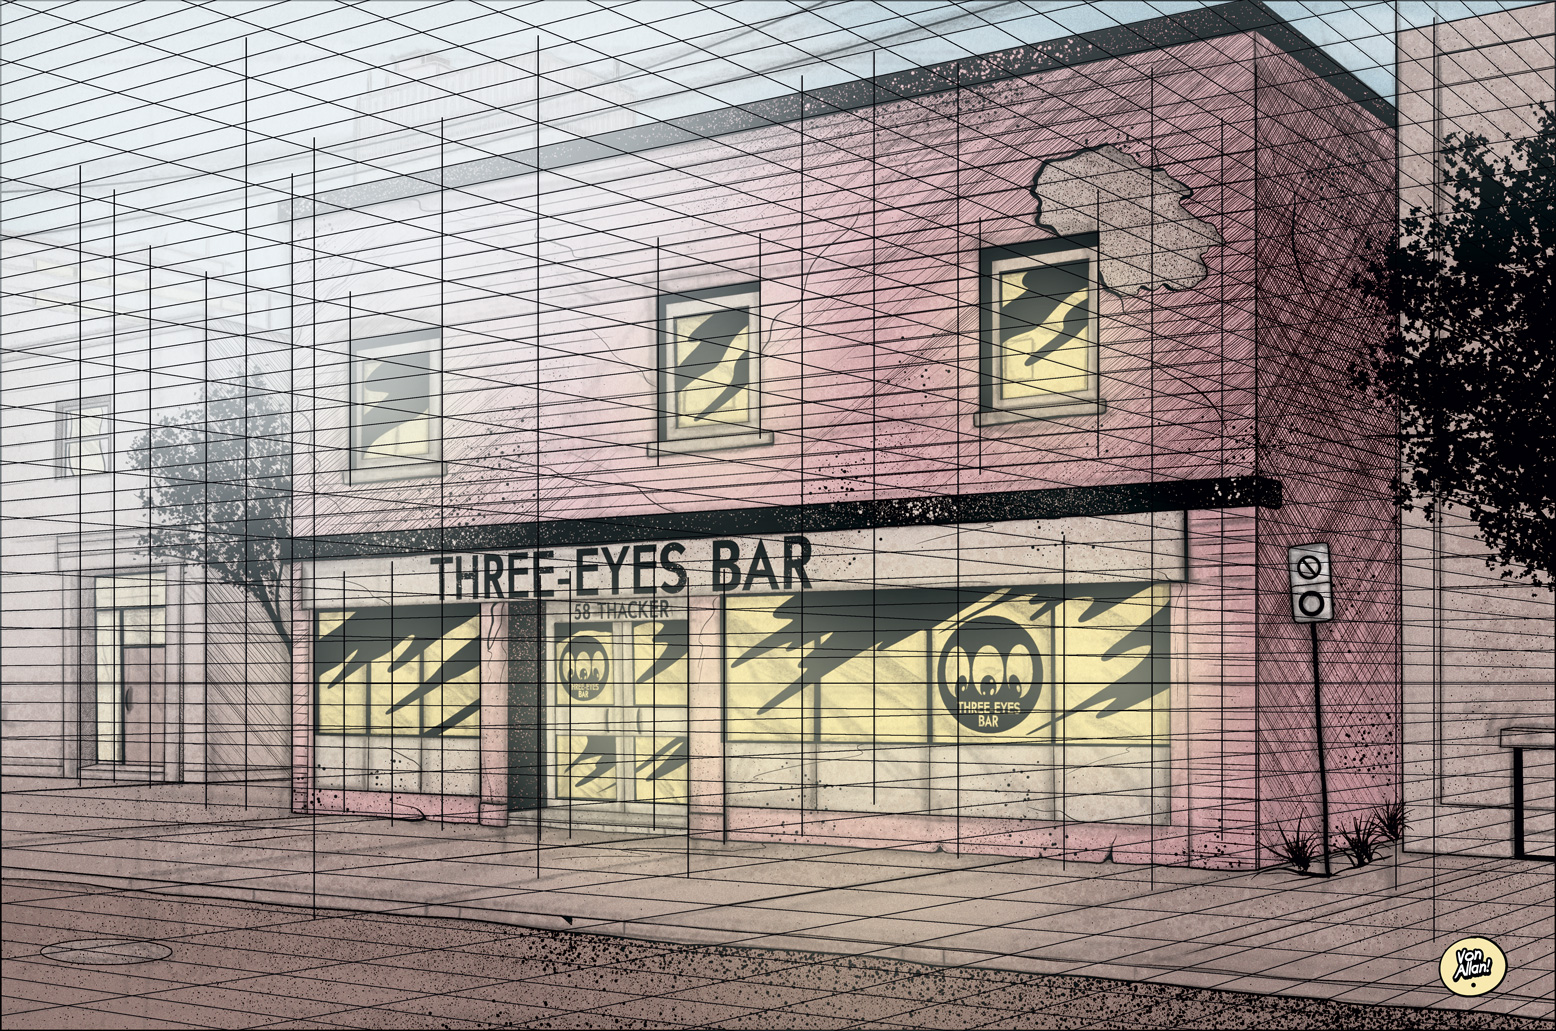 Sketch of Three-Eyes Bar by Von Allan